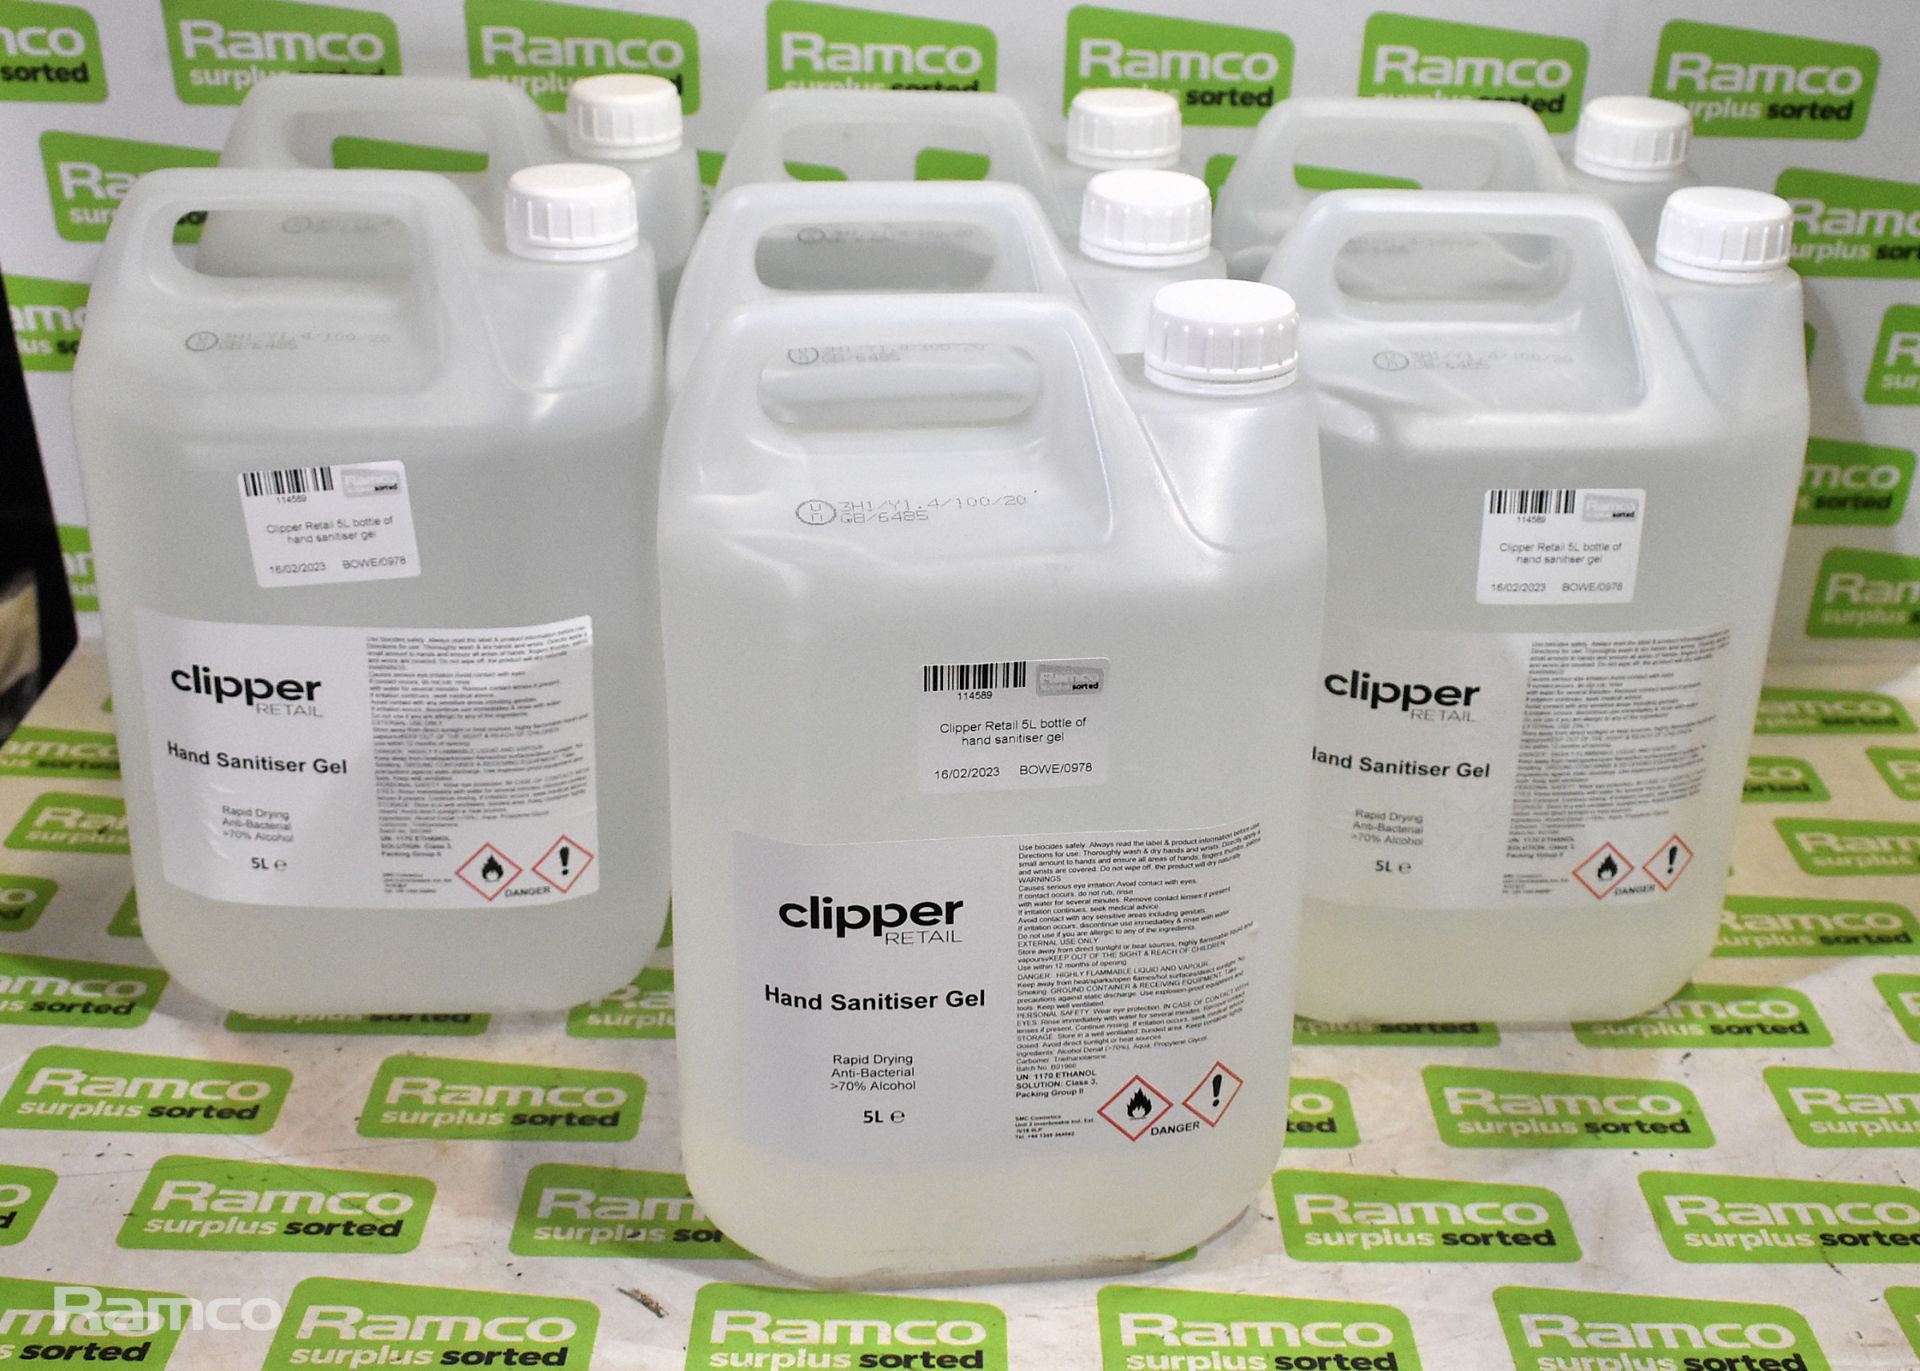 7x Clipper Retail 5L bottles of hand sanitiser gel